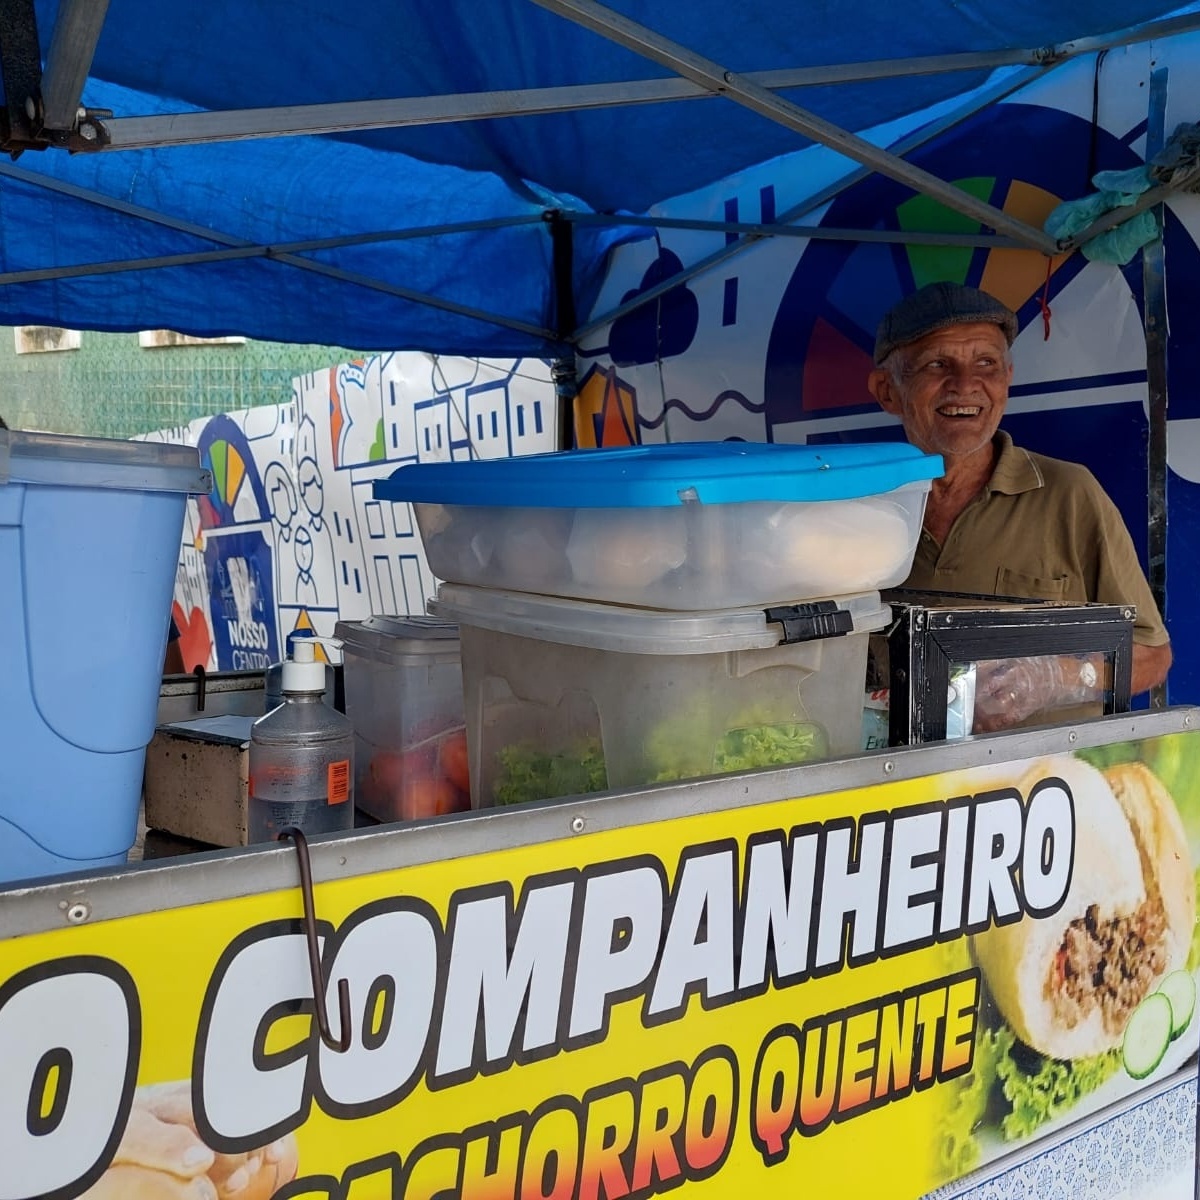 Cachorro-Quente do Sousa - Food Truck em São Luís